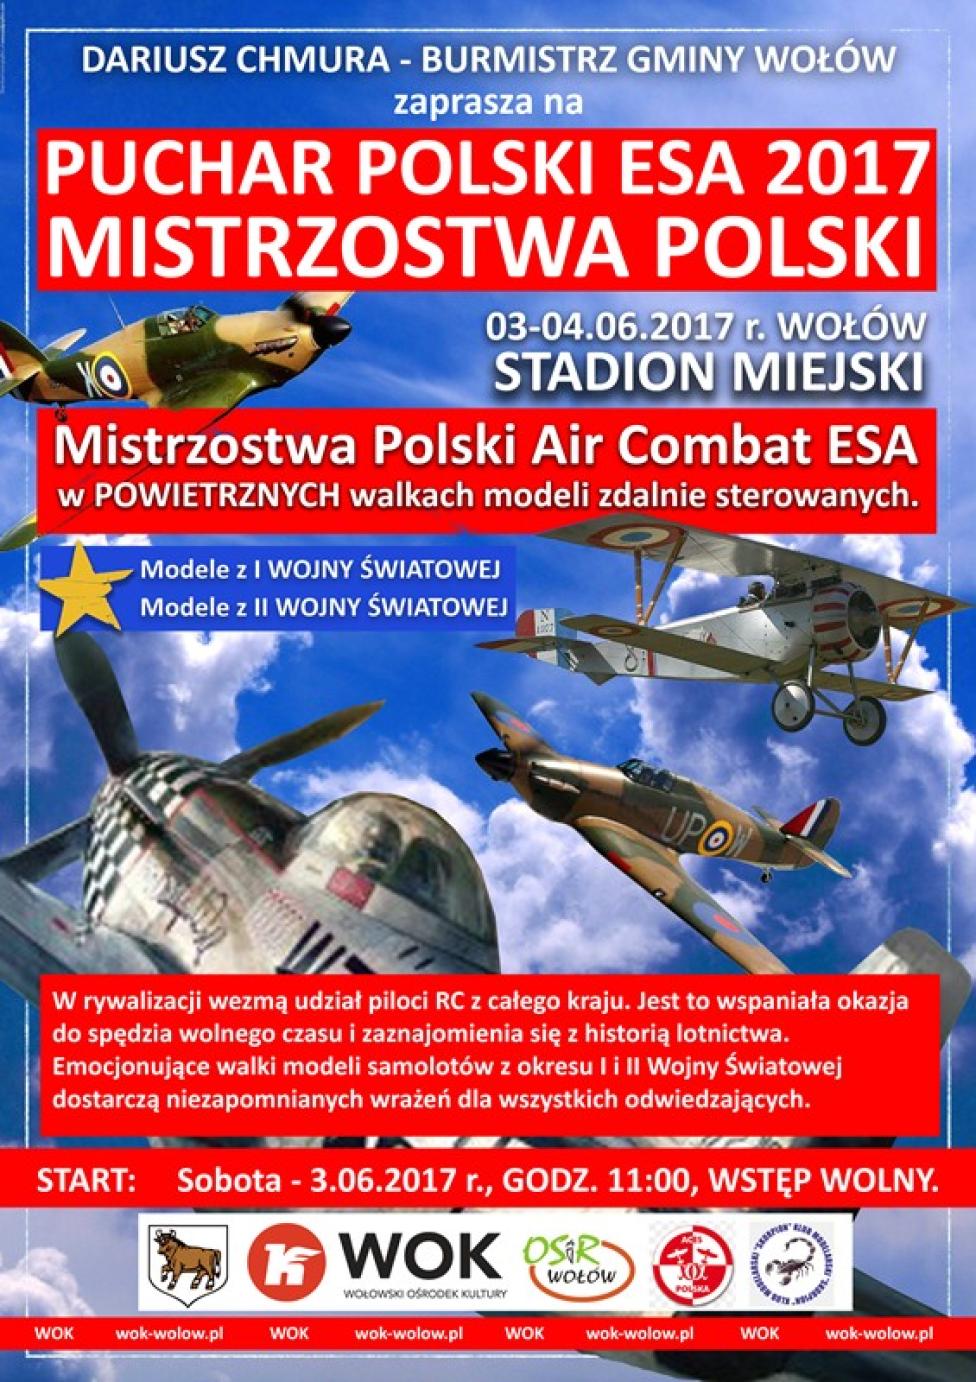 Mistrzostwa Polski Air Combat ESA 2017 w Wołowie (fot. skorpion.wok-wolow.pl)